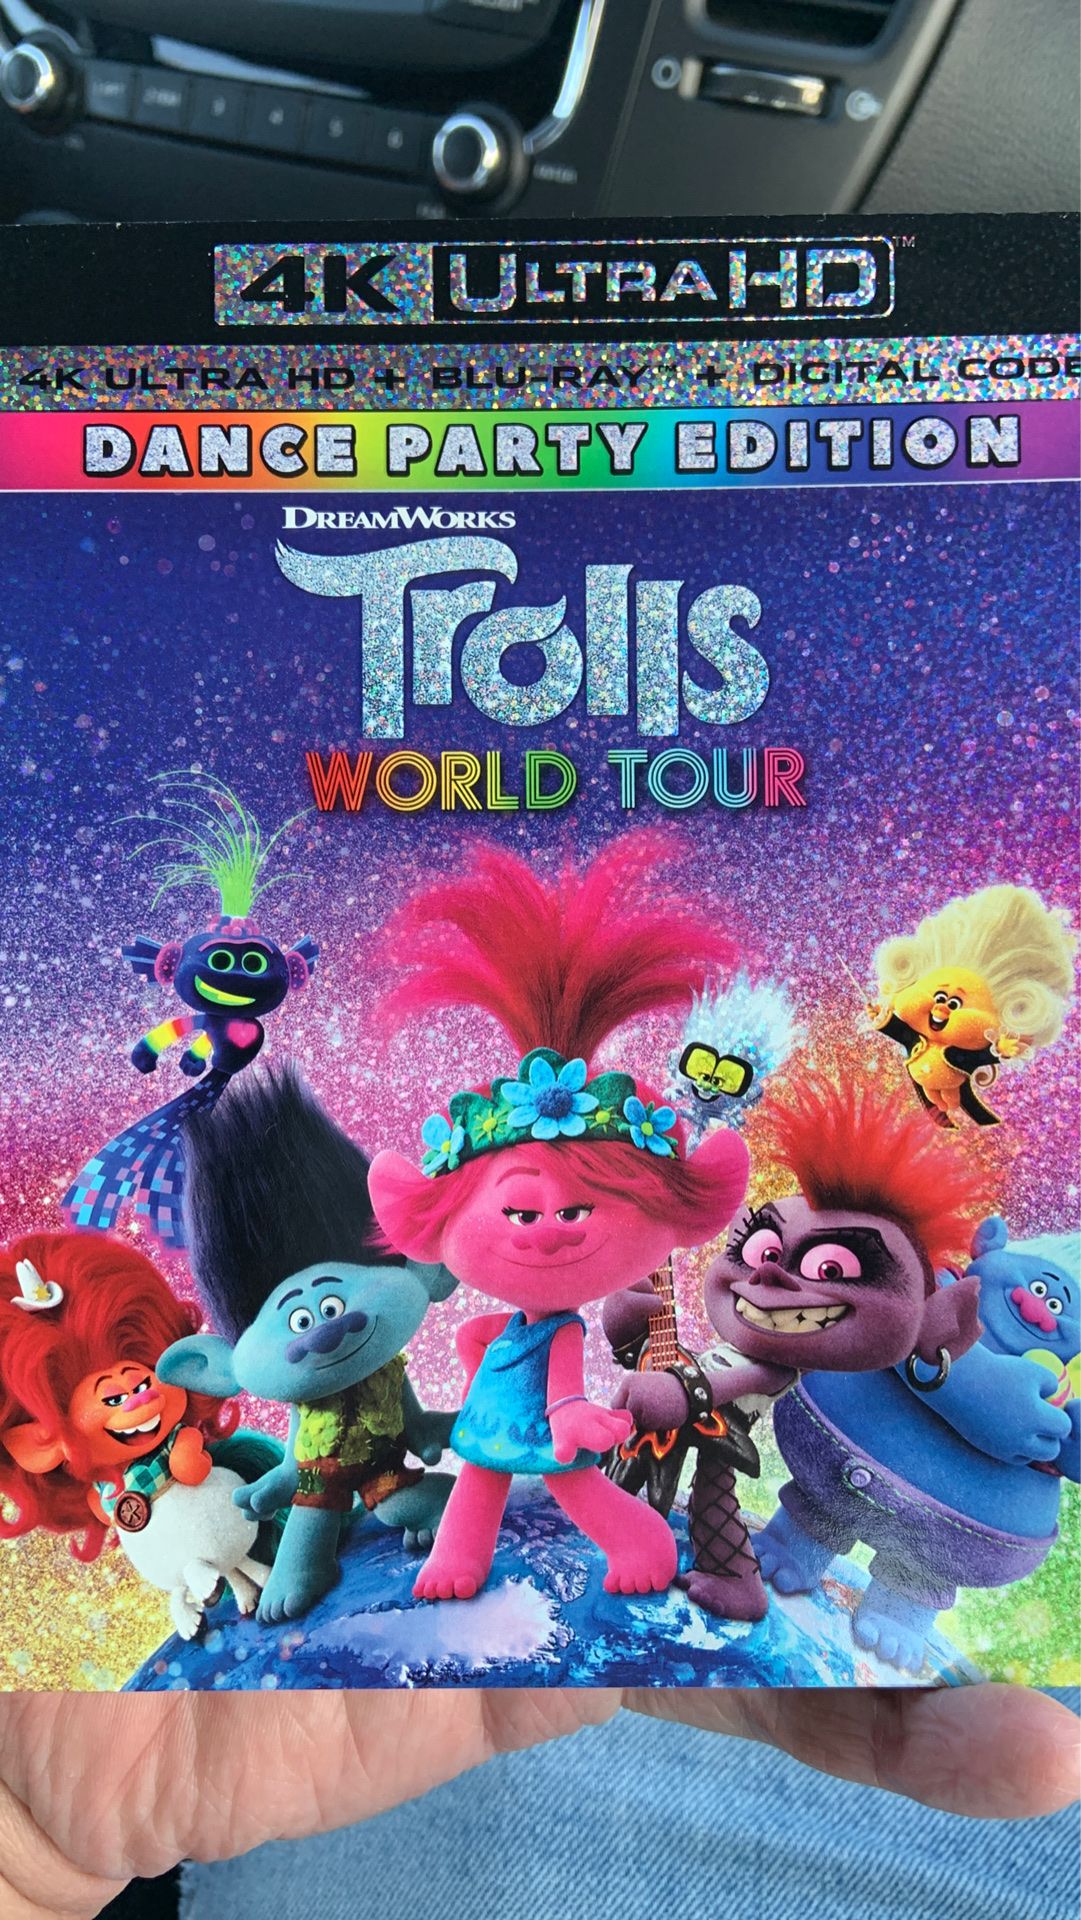 Trolls world tour 4K ultra HD plus digital copy